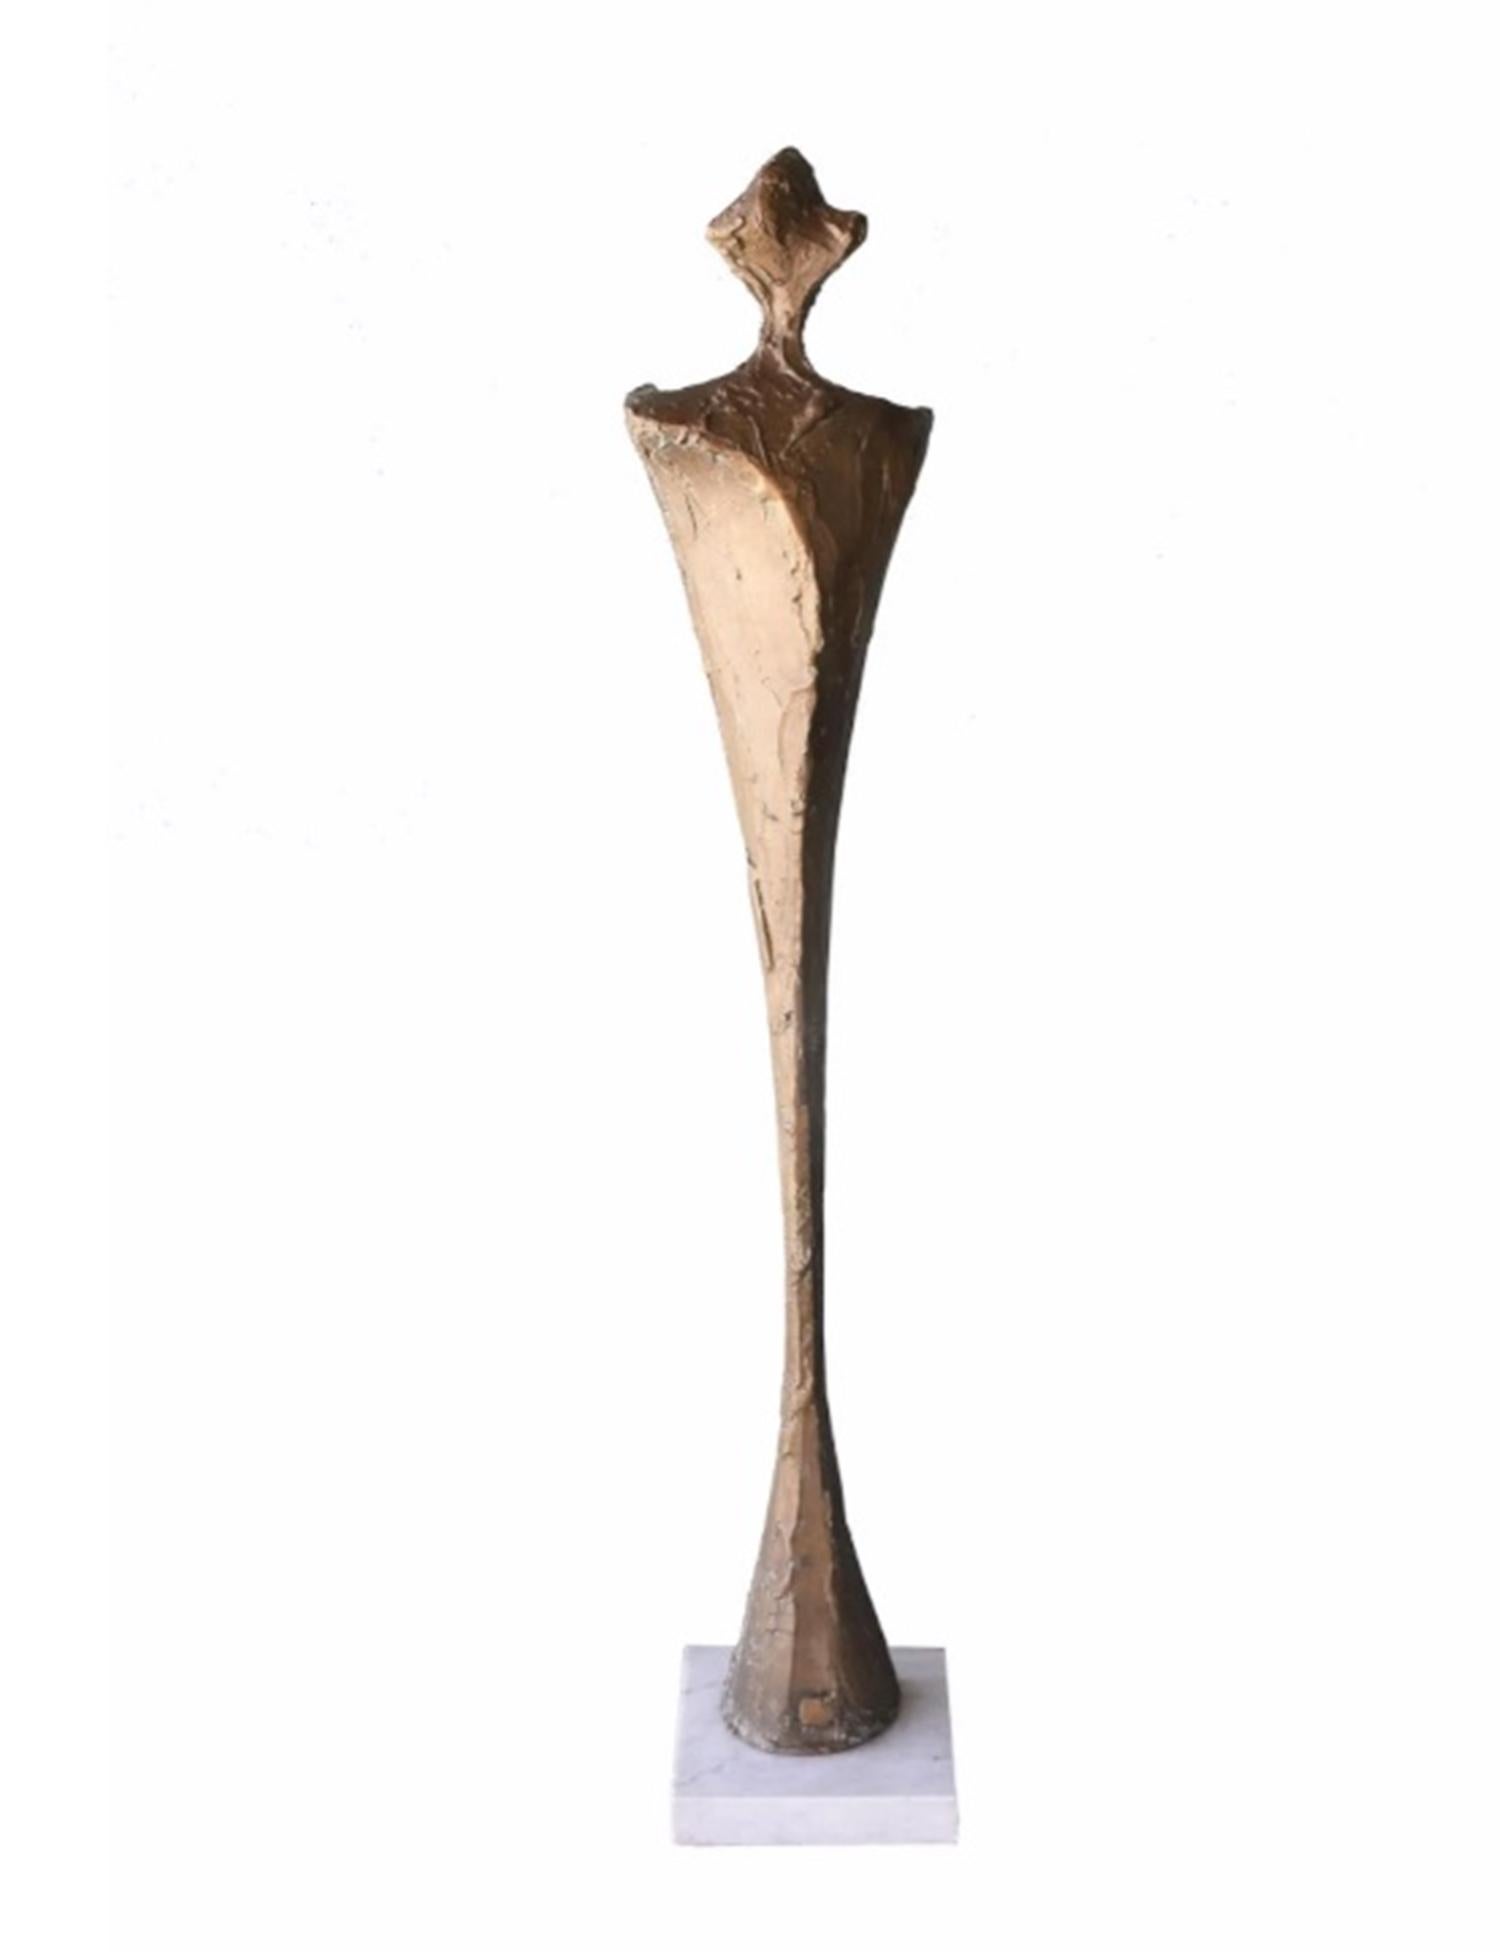 Voici l'époustouflante sculpture en bronze d'Antonio Kieff Grediaga, signée et numérotée 1/6. 

L'œuvre s'intitule 